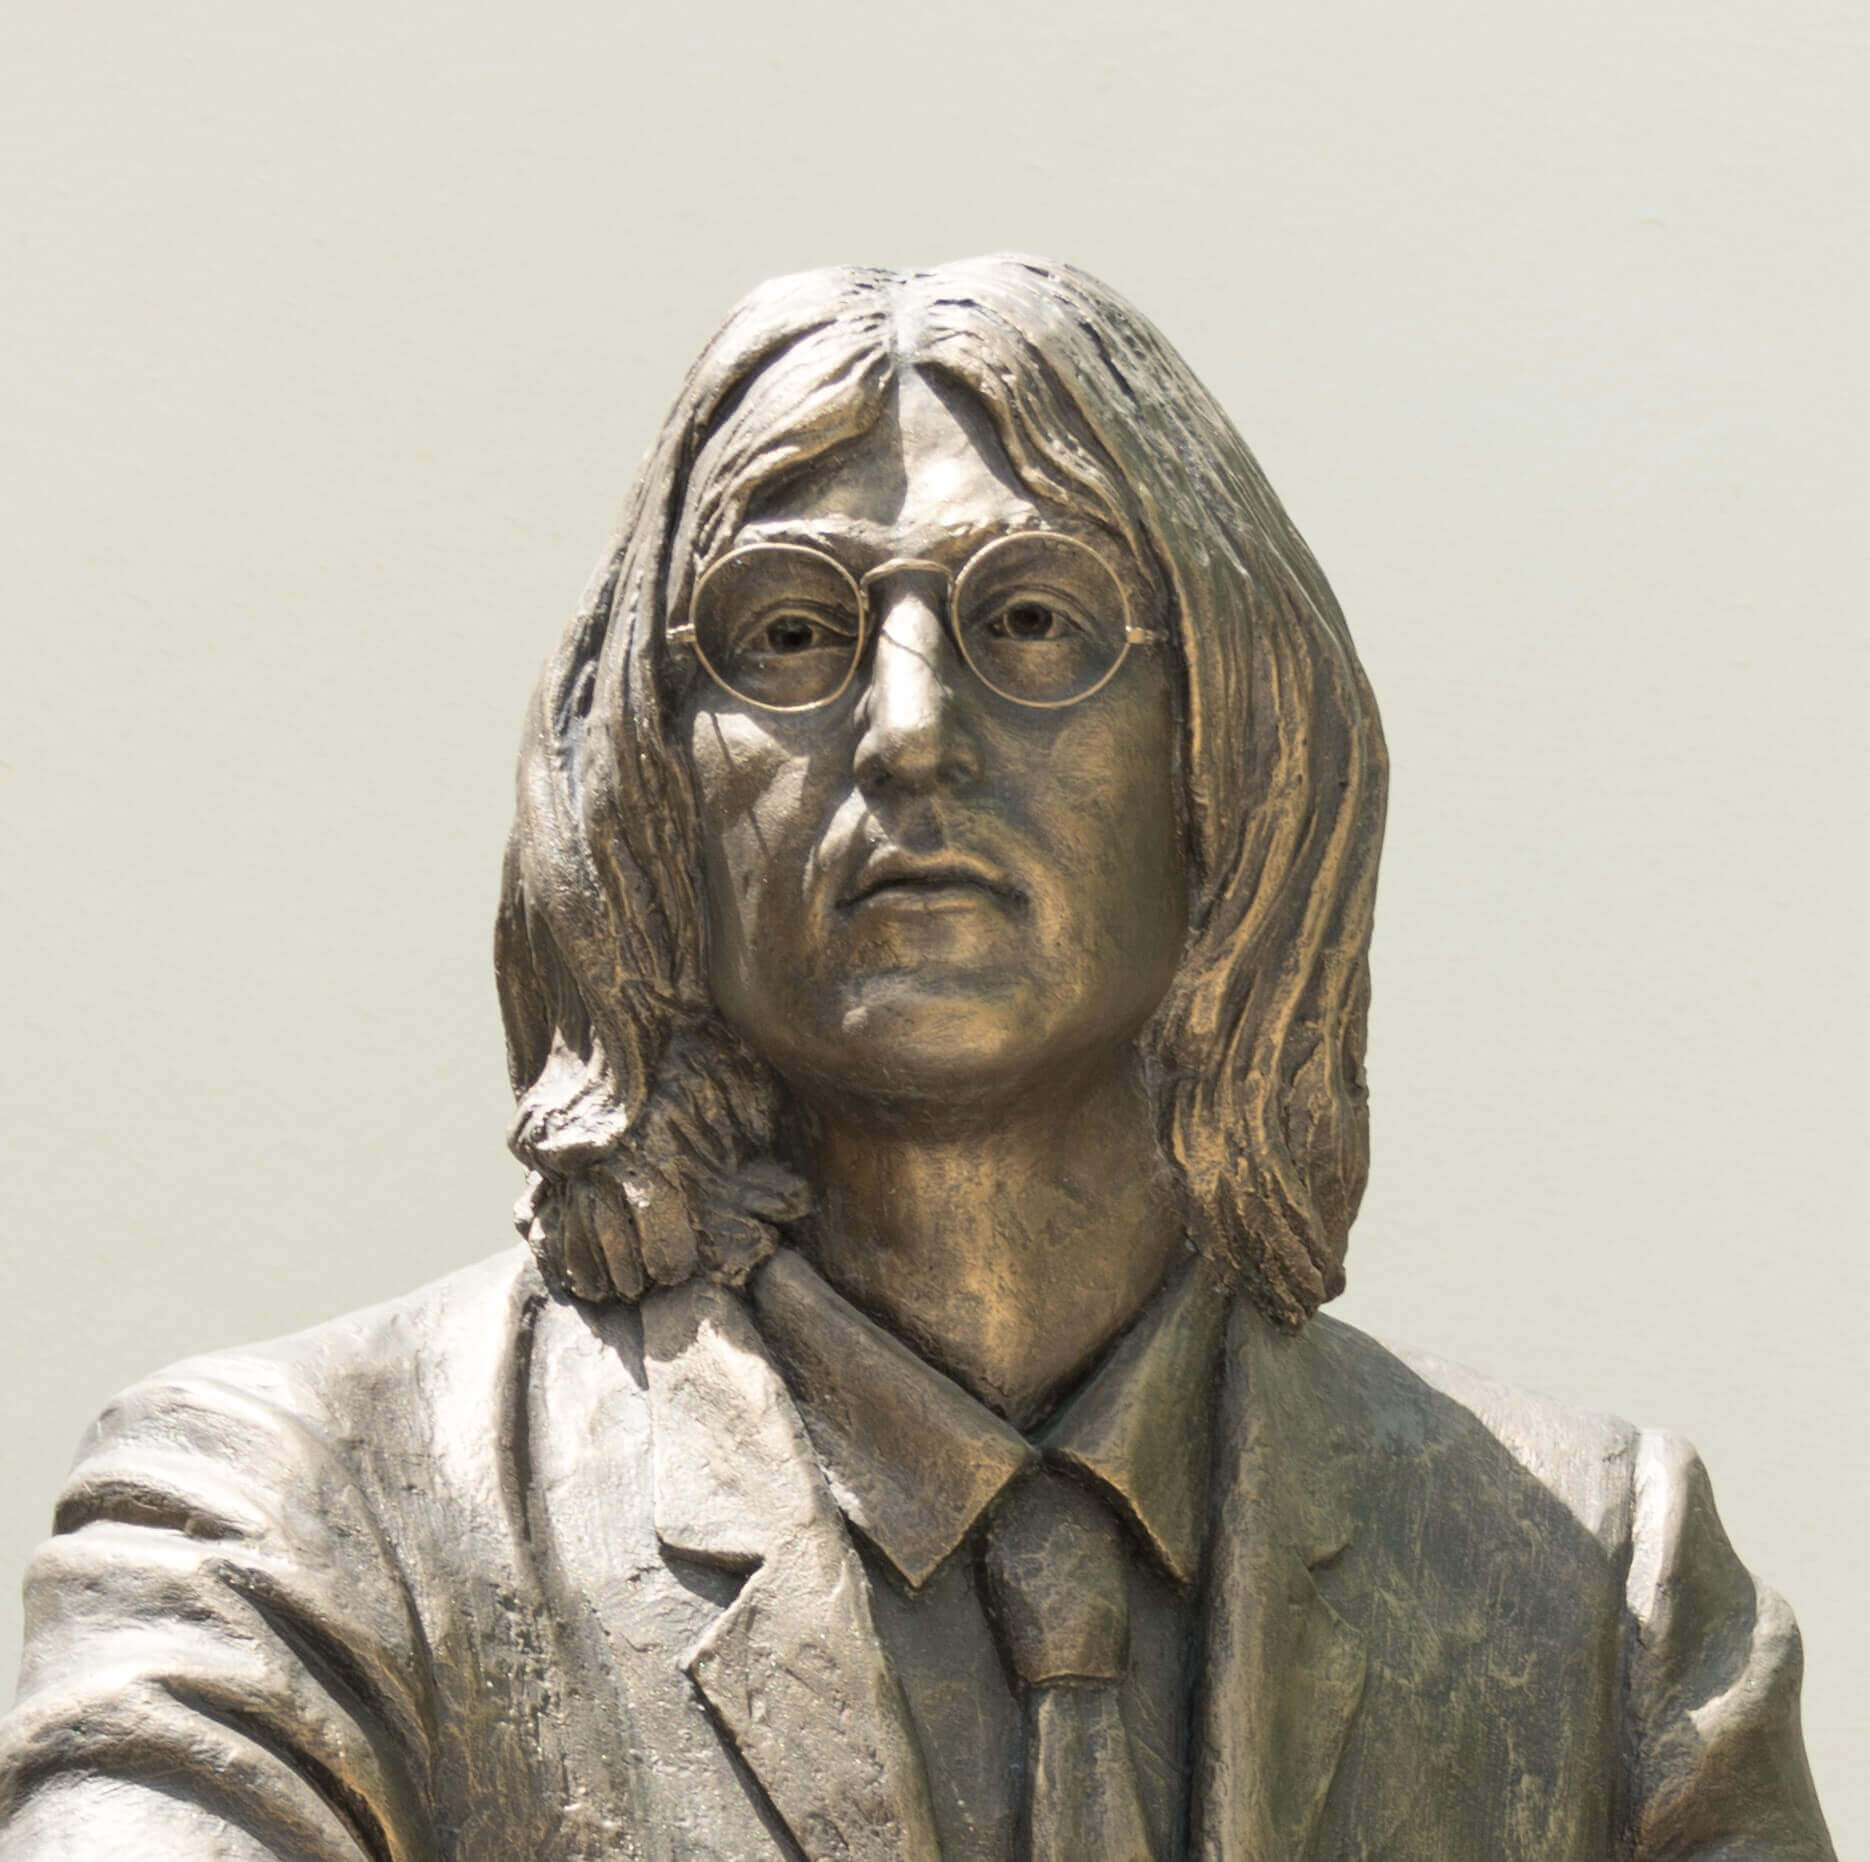 A statue of "Imagine" singer John Lennon wearing glasses